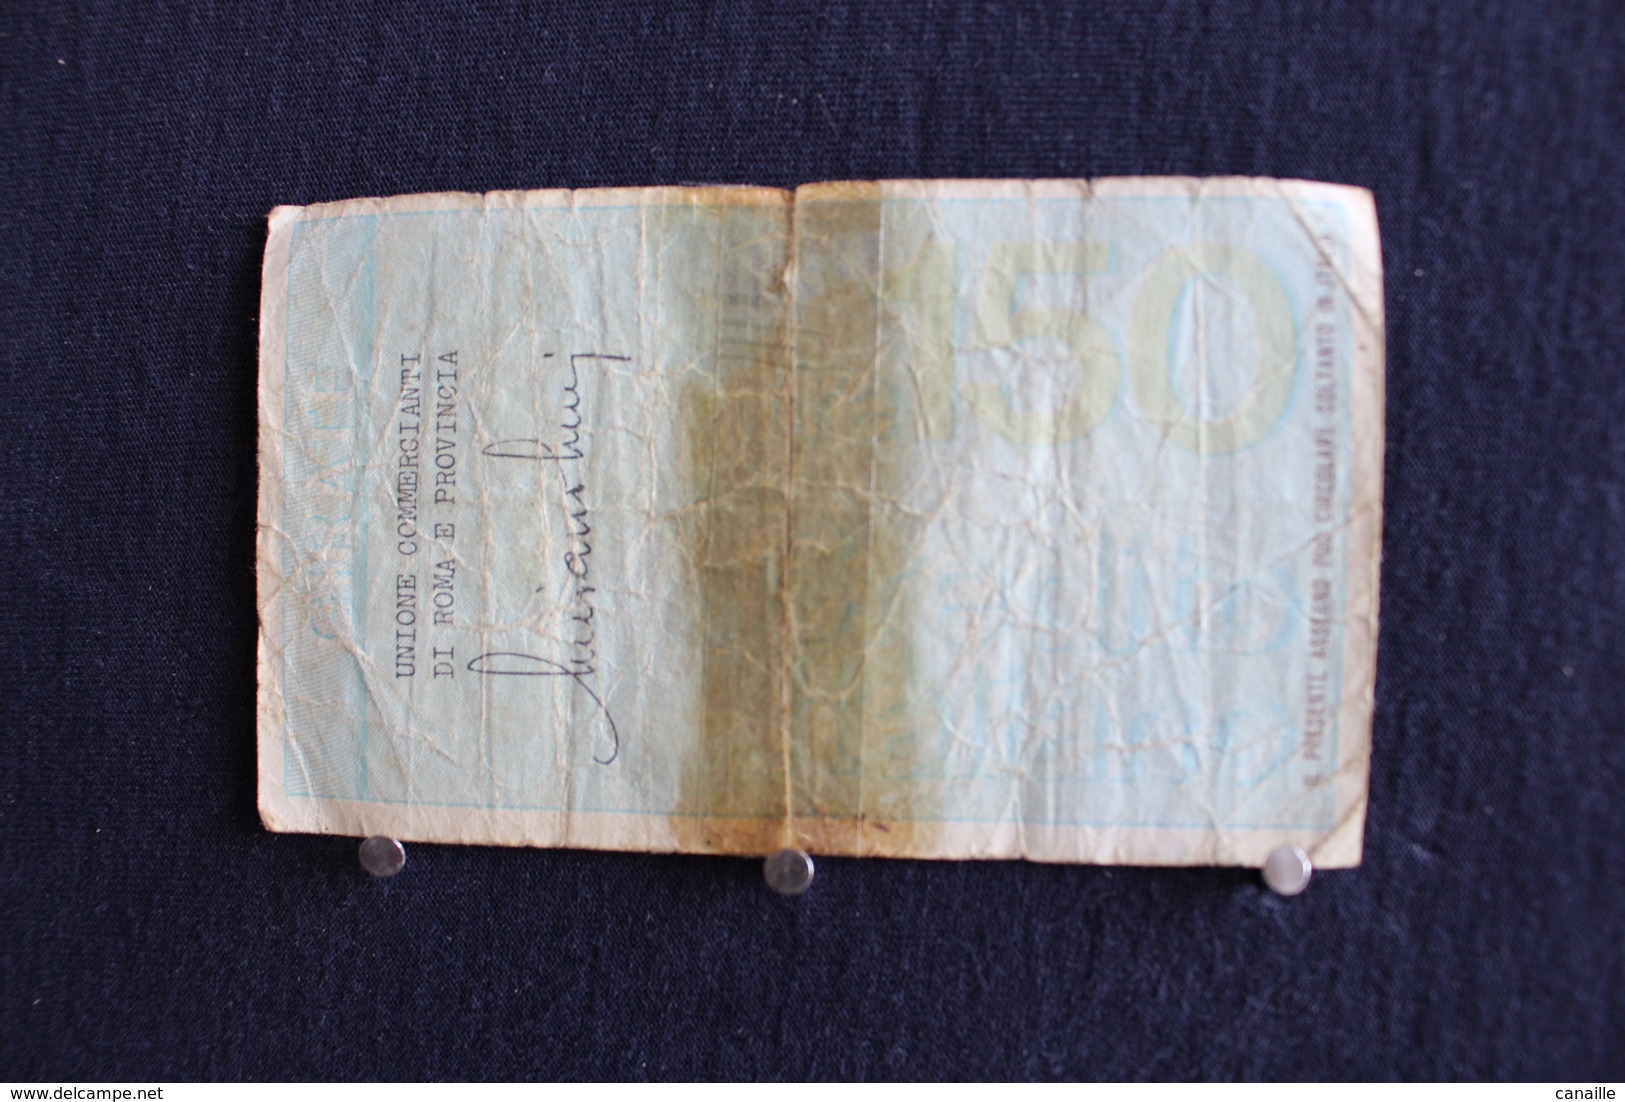 1 / Italie-1946 : Royaume / Biglietti - Credito Italino-150 Lire- Centocinquanta. Union Commercianti Di Roma, 5.3.1976 - 100 Liras